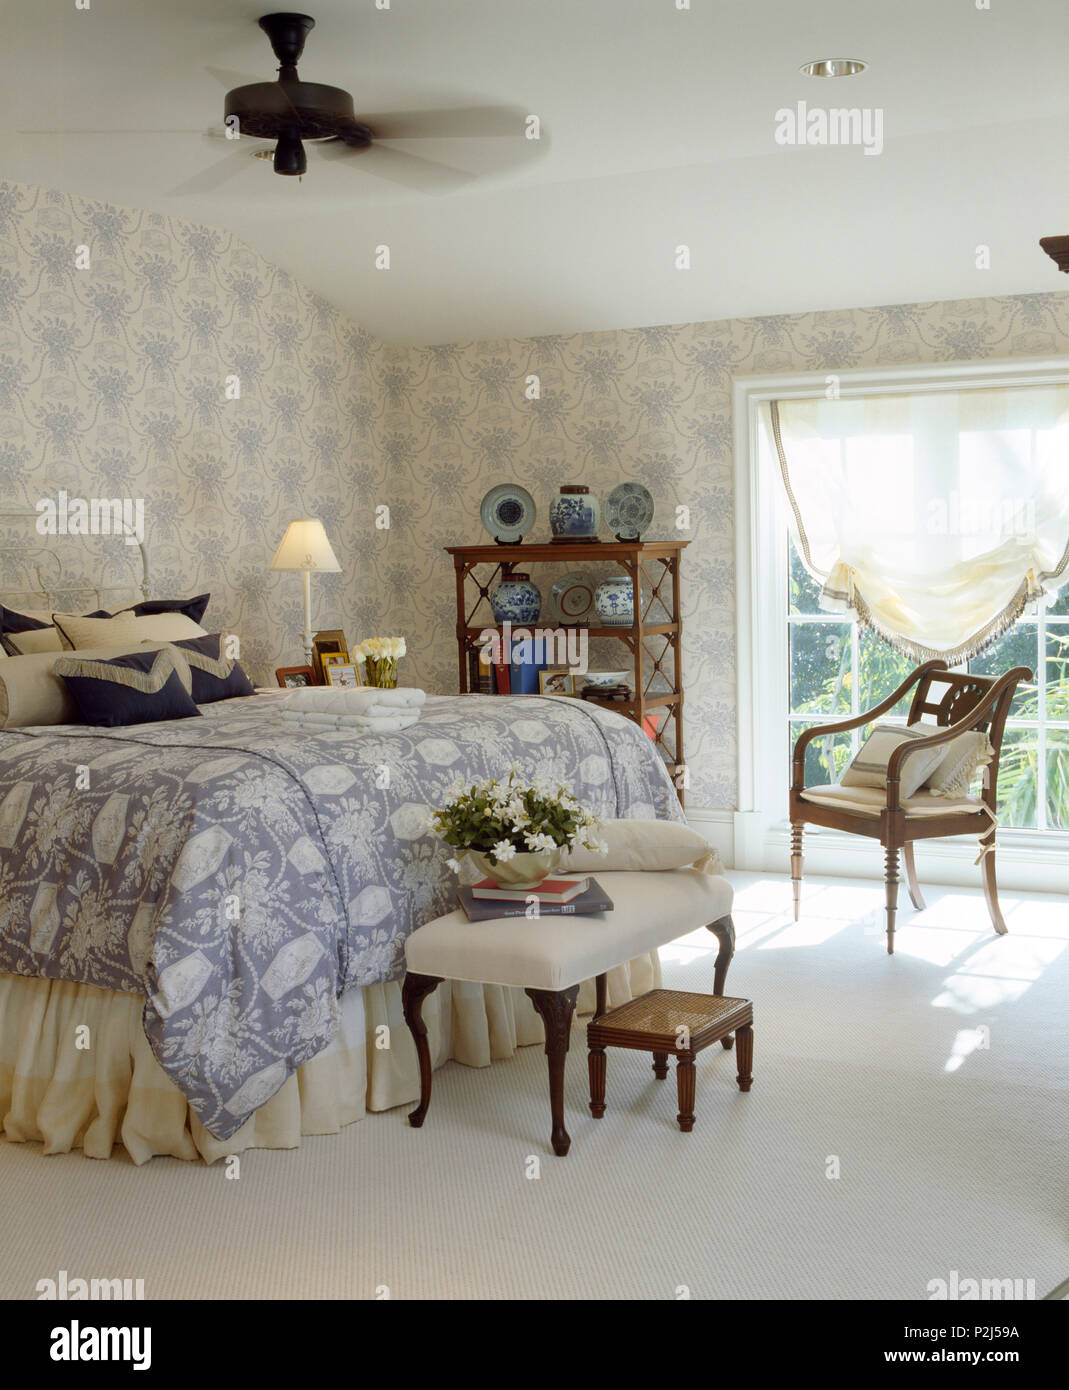 Elektrische Decken Ventilator über dem Bett mit Blau + Weiß - Abdeckung in  hellen und geräumigen Schlafzimmer mit Blau + weiß tapeten Stockfotografie  - Alamy